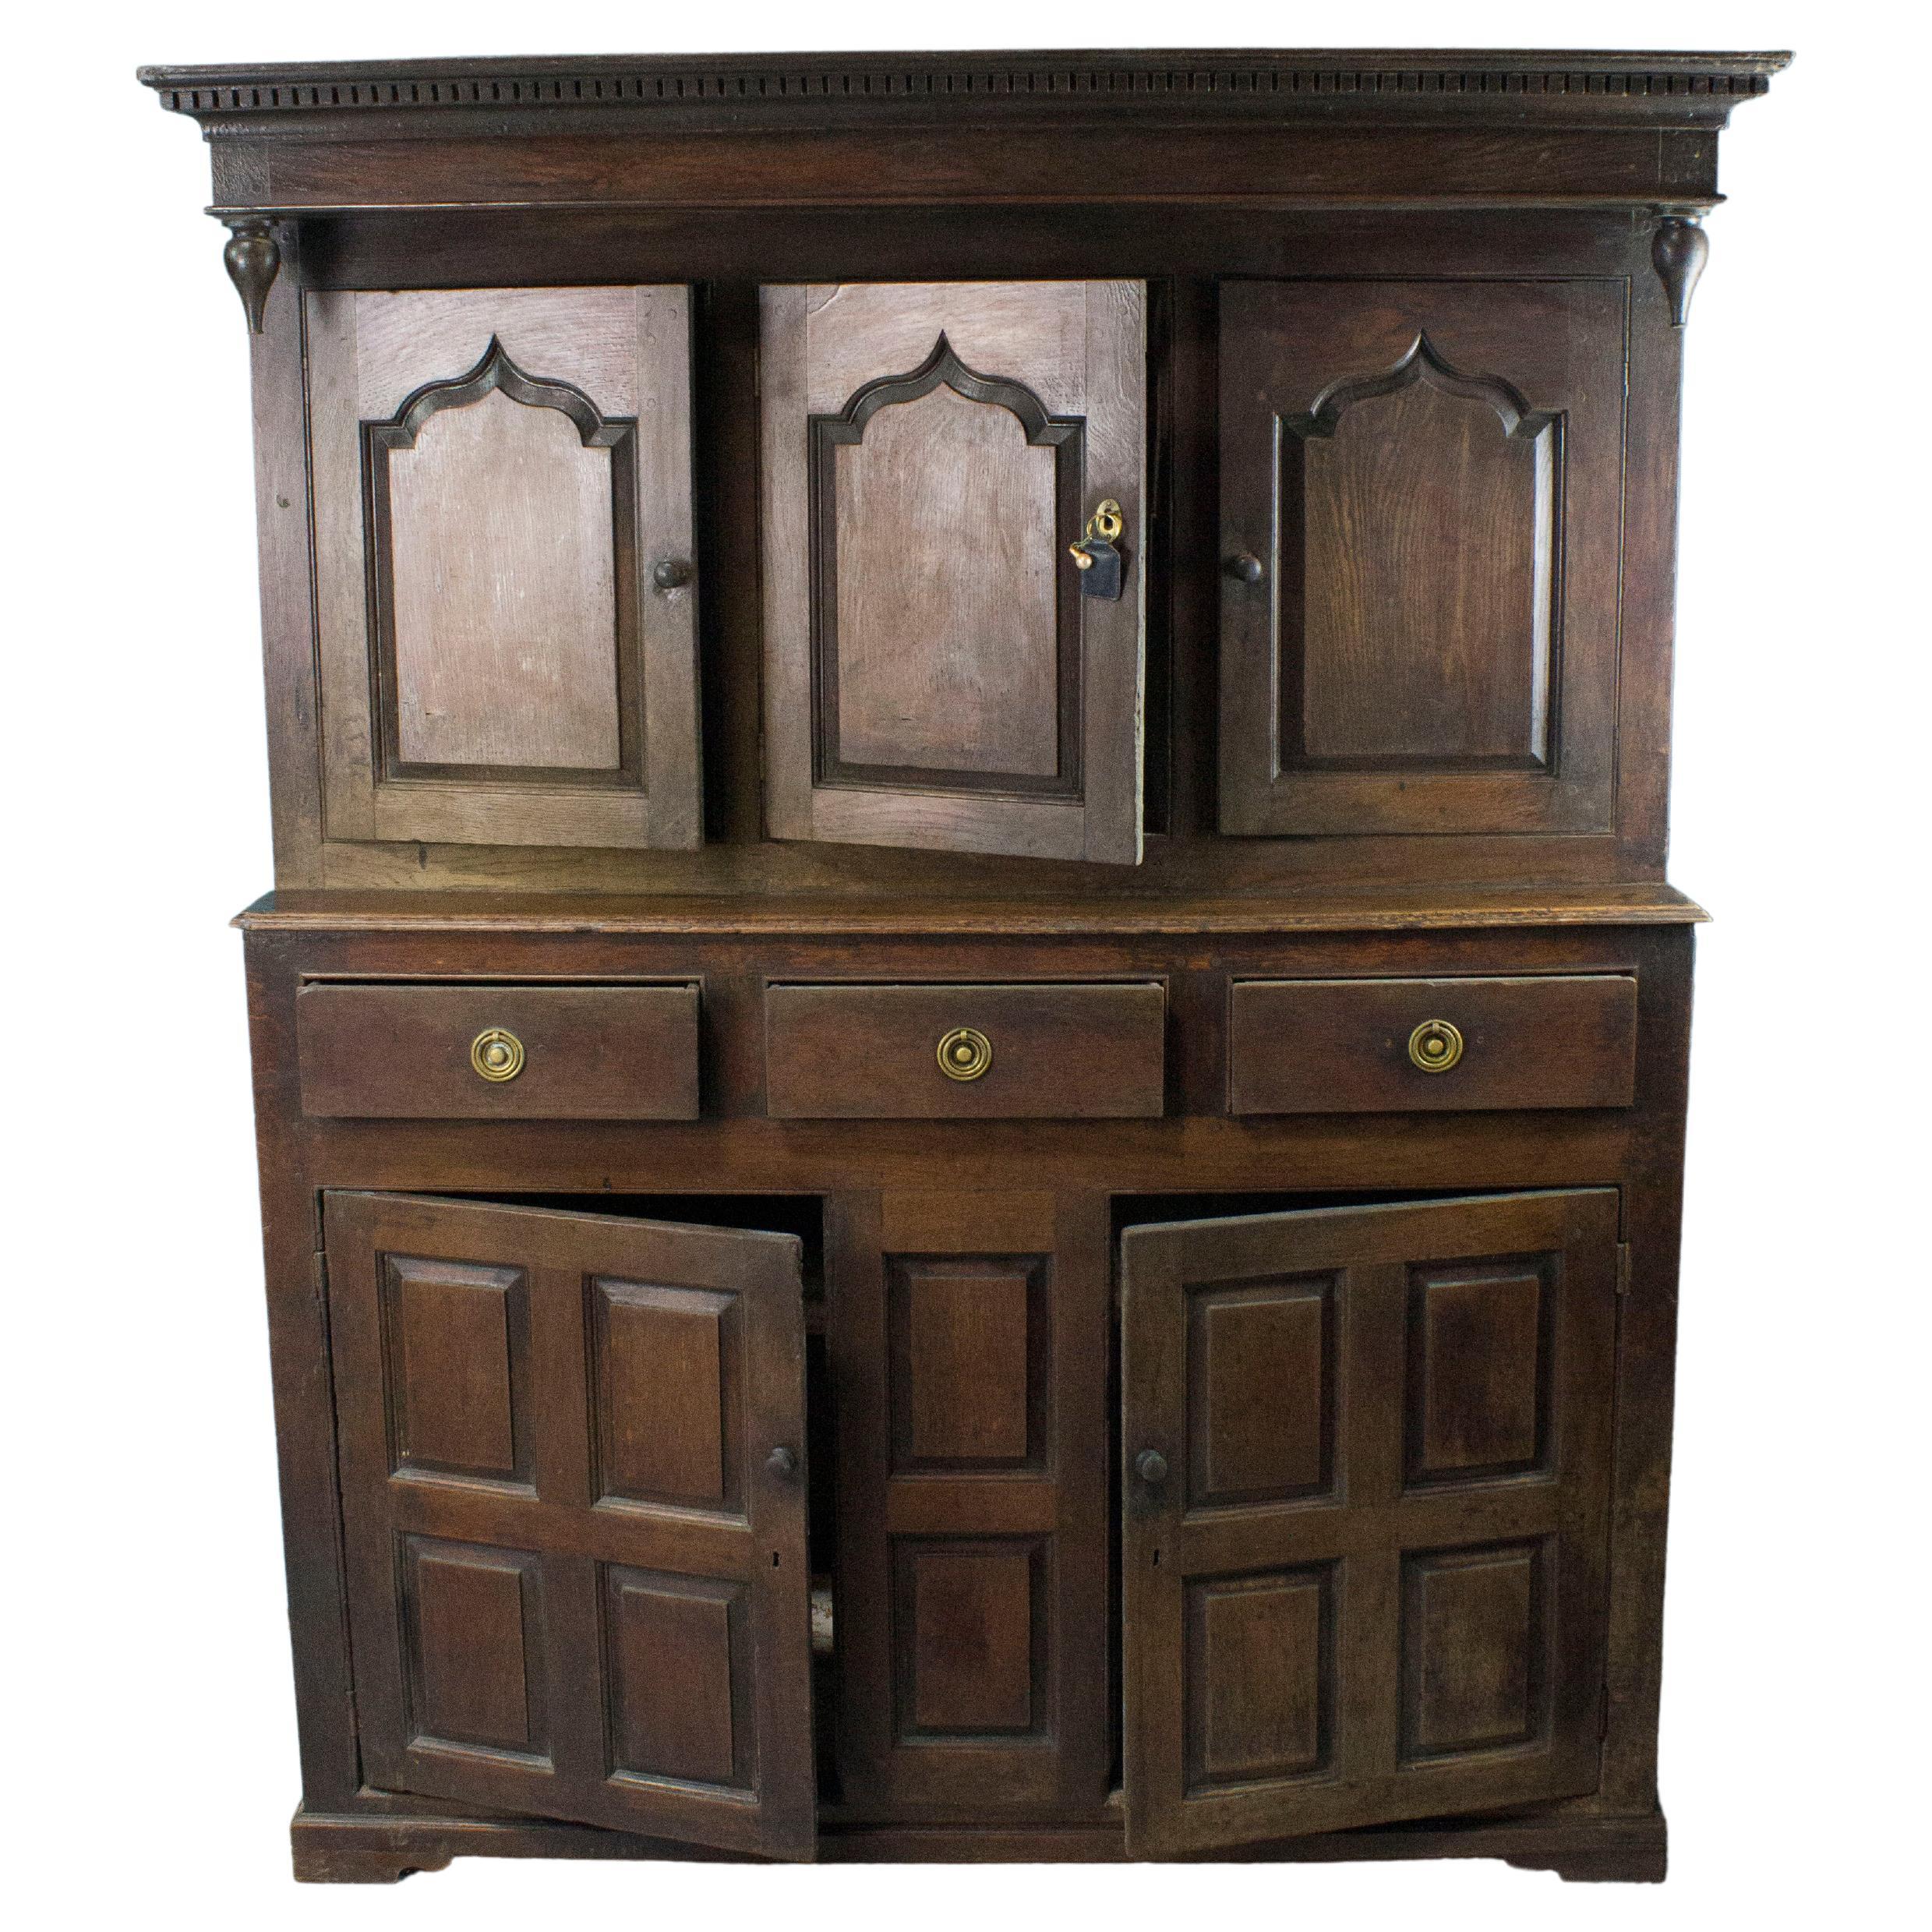 Buffet en chêne du 18e siècle ouvrant à deux portes avec panneaux dans la partie inférieure avec boutons en bois et trois tiroirs en ceinture avec loquets en laiton. La partie supérieure de l'armoire, légèrement en retrait, comporte trois portes